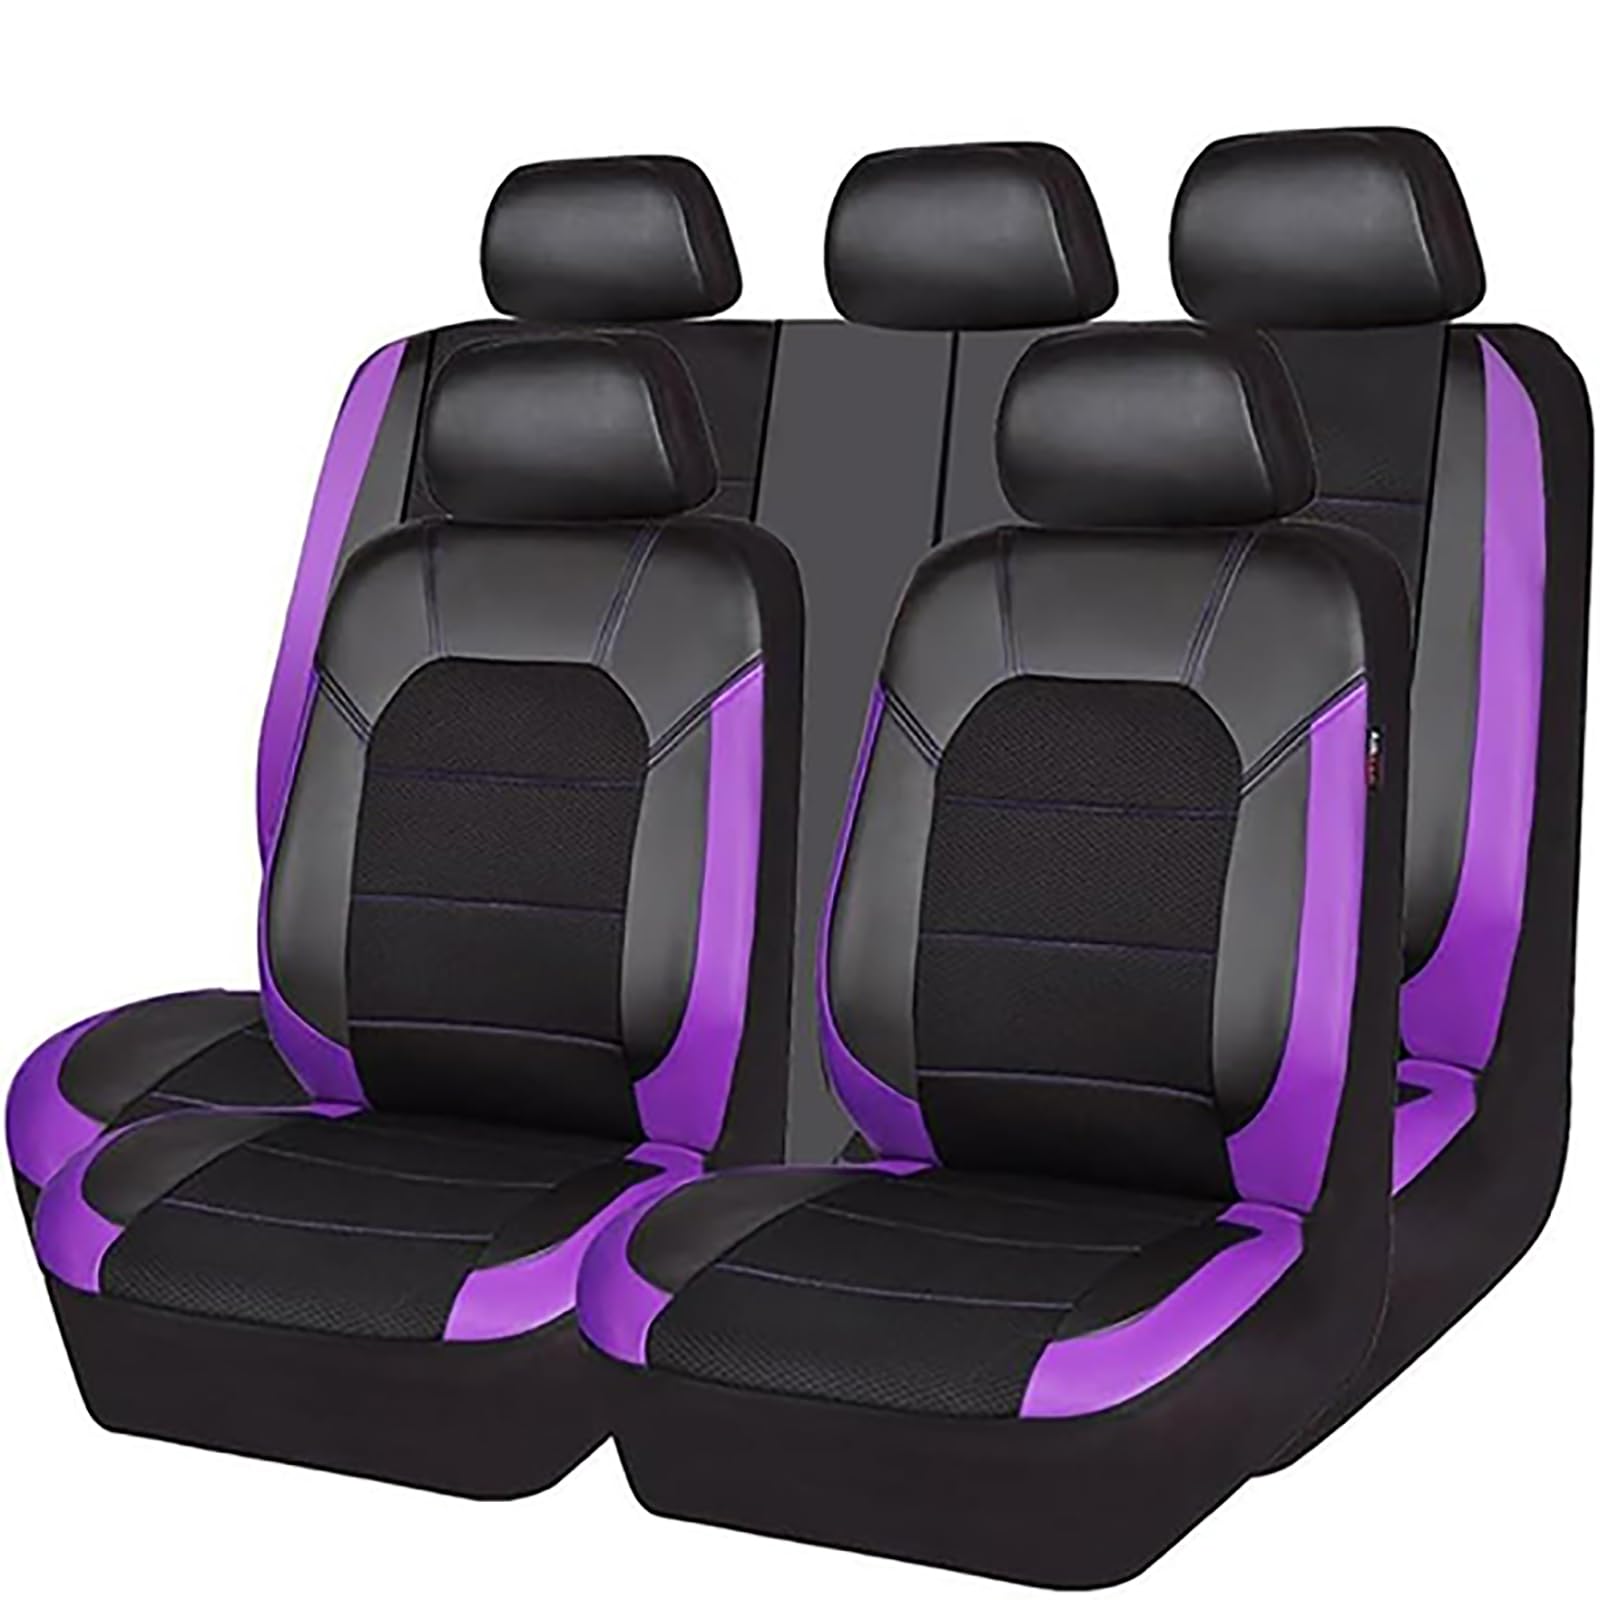 EYHQKRTR Auto Leder Sitzkissen Für VW Polo V (6R, 6C) 2011-2018, 5 Sitzer Full Set SitzbezüGe Schonbezug Vorne Rückbank Sitzschutz Compatible Airbag Innenraum Zubehör,E/Purple von EYHQKRTR